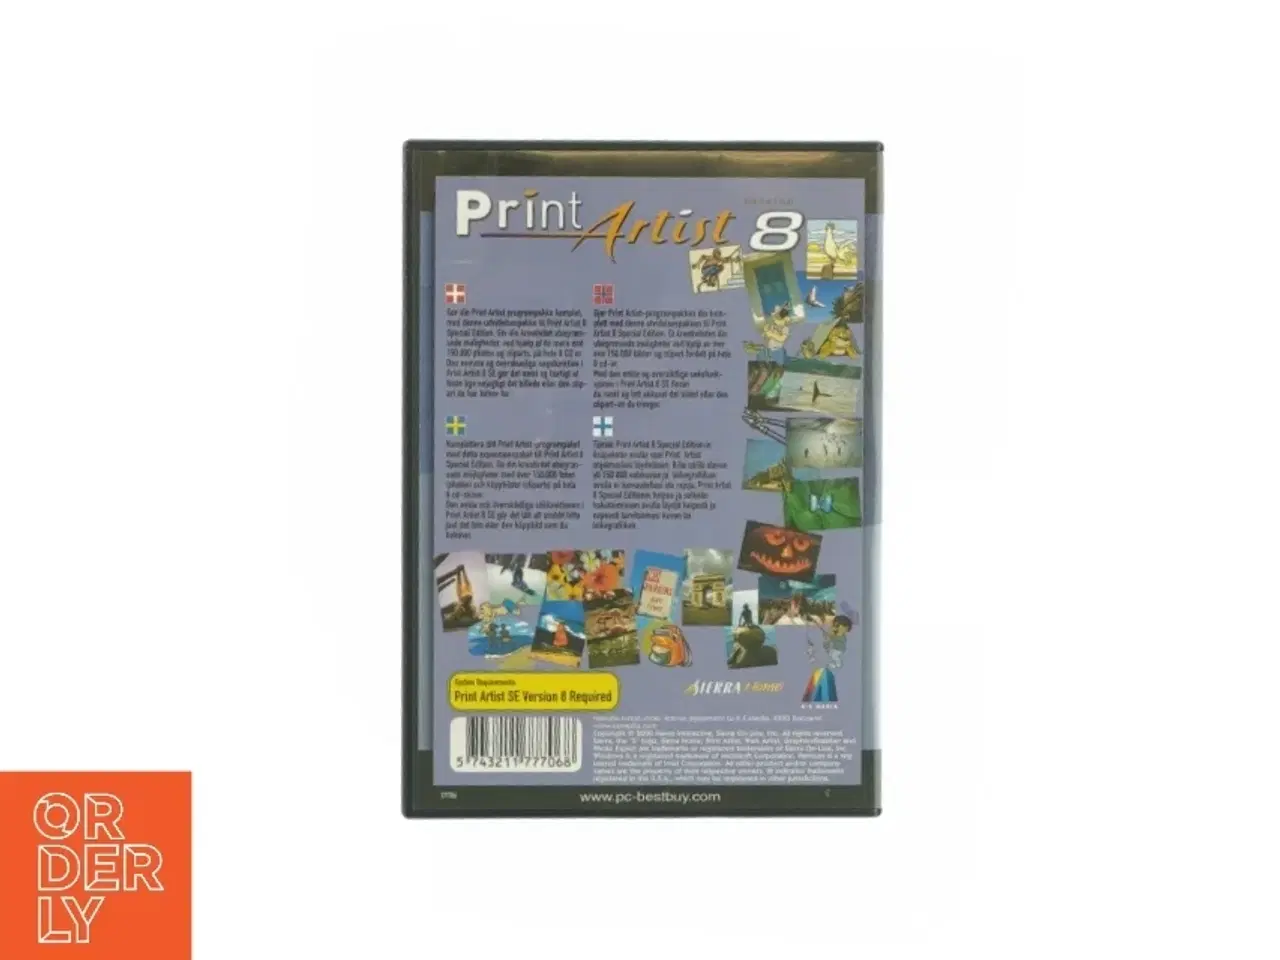 Billede 2 - Print artist 8 Expansion pack (DVD)